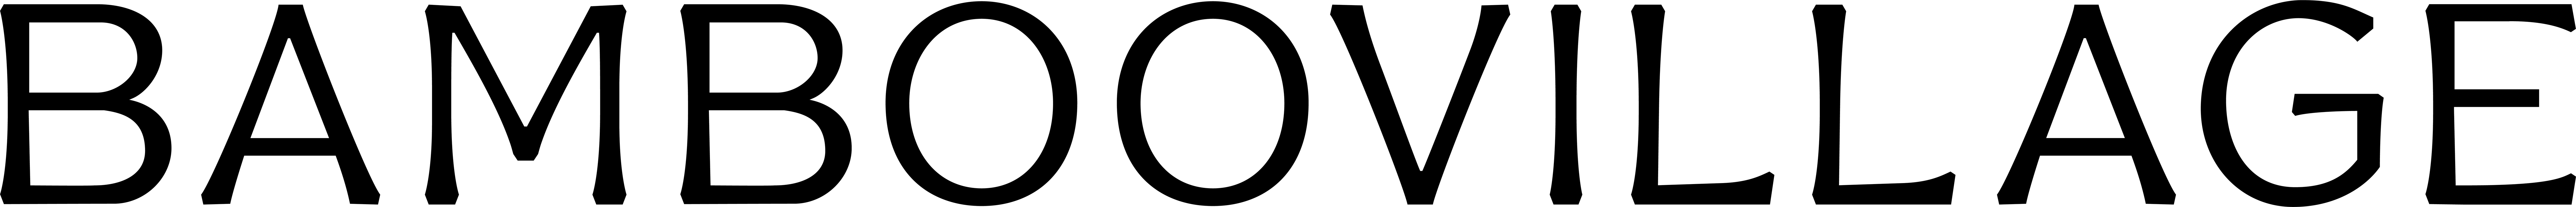 Bamboovillage logo